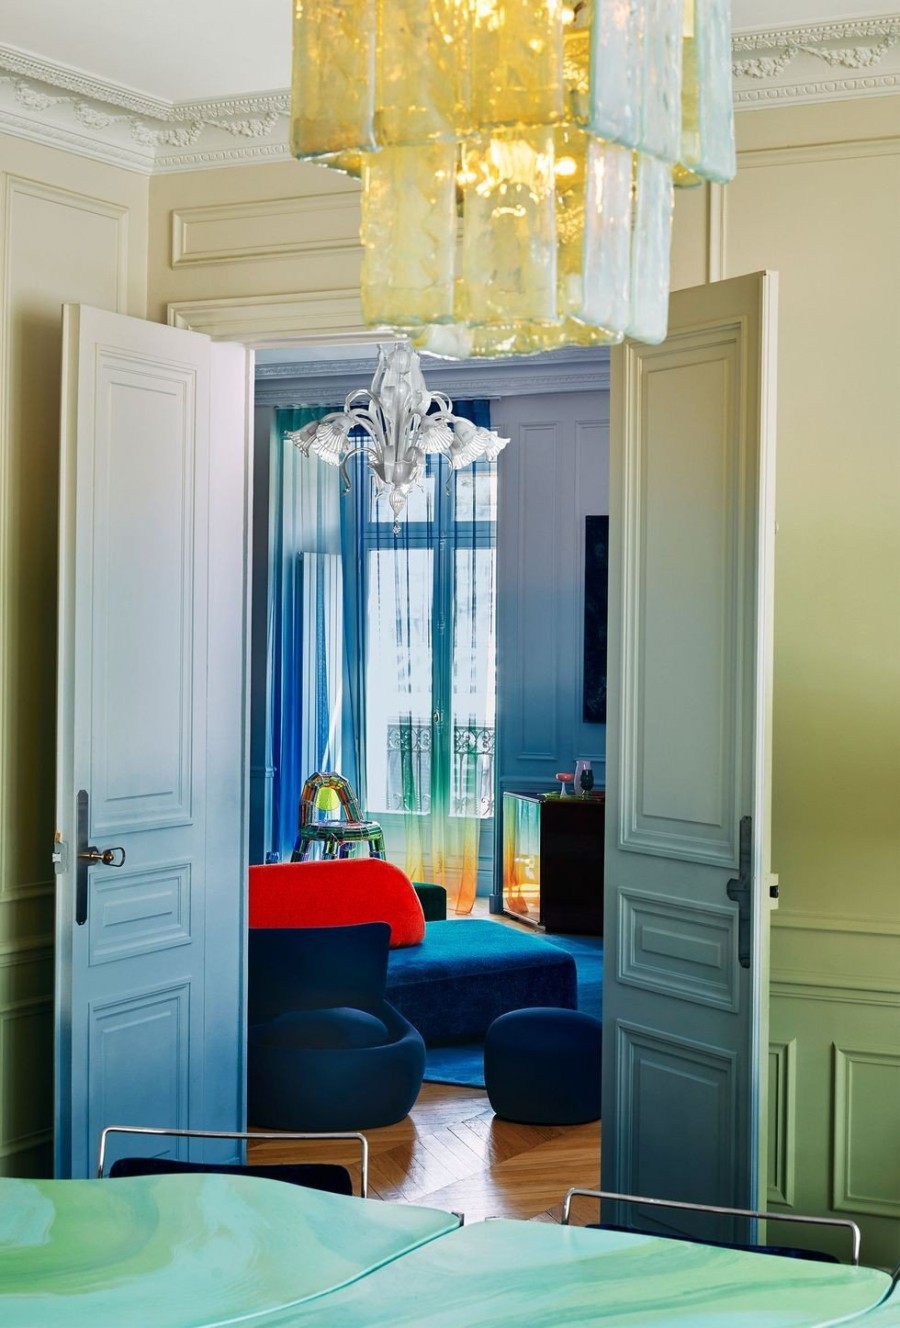 Σε ένα παριζιάνικο διαμέρισμα η κλασική Haussmannian αρχιτεκτονική κάνει εκκεντρικά παιχνίδια με τα χρώματα - Φωτογραφία 2